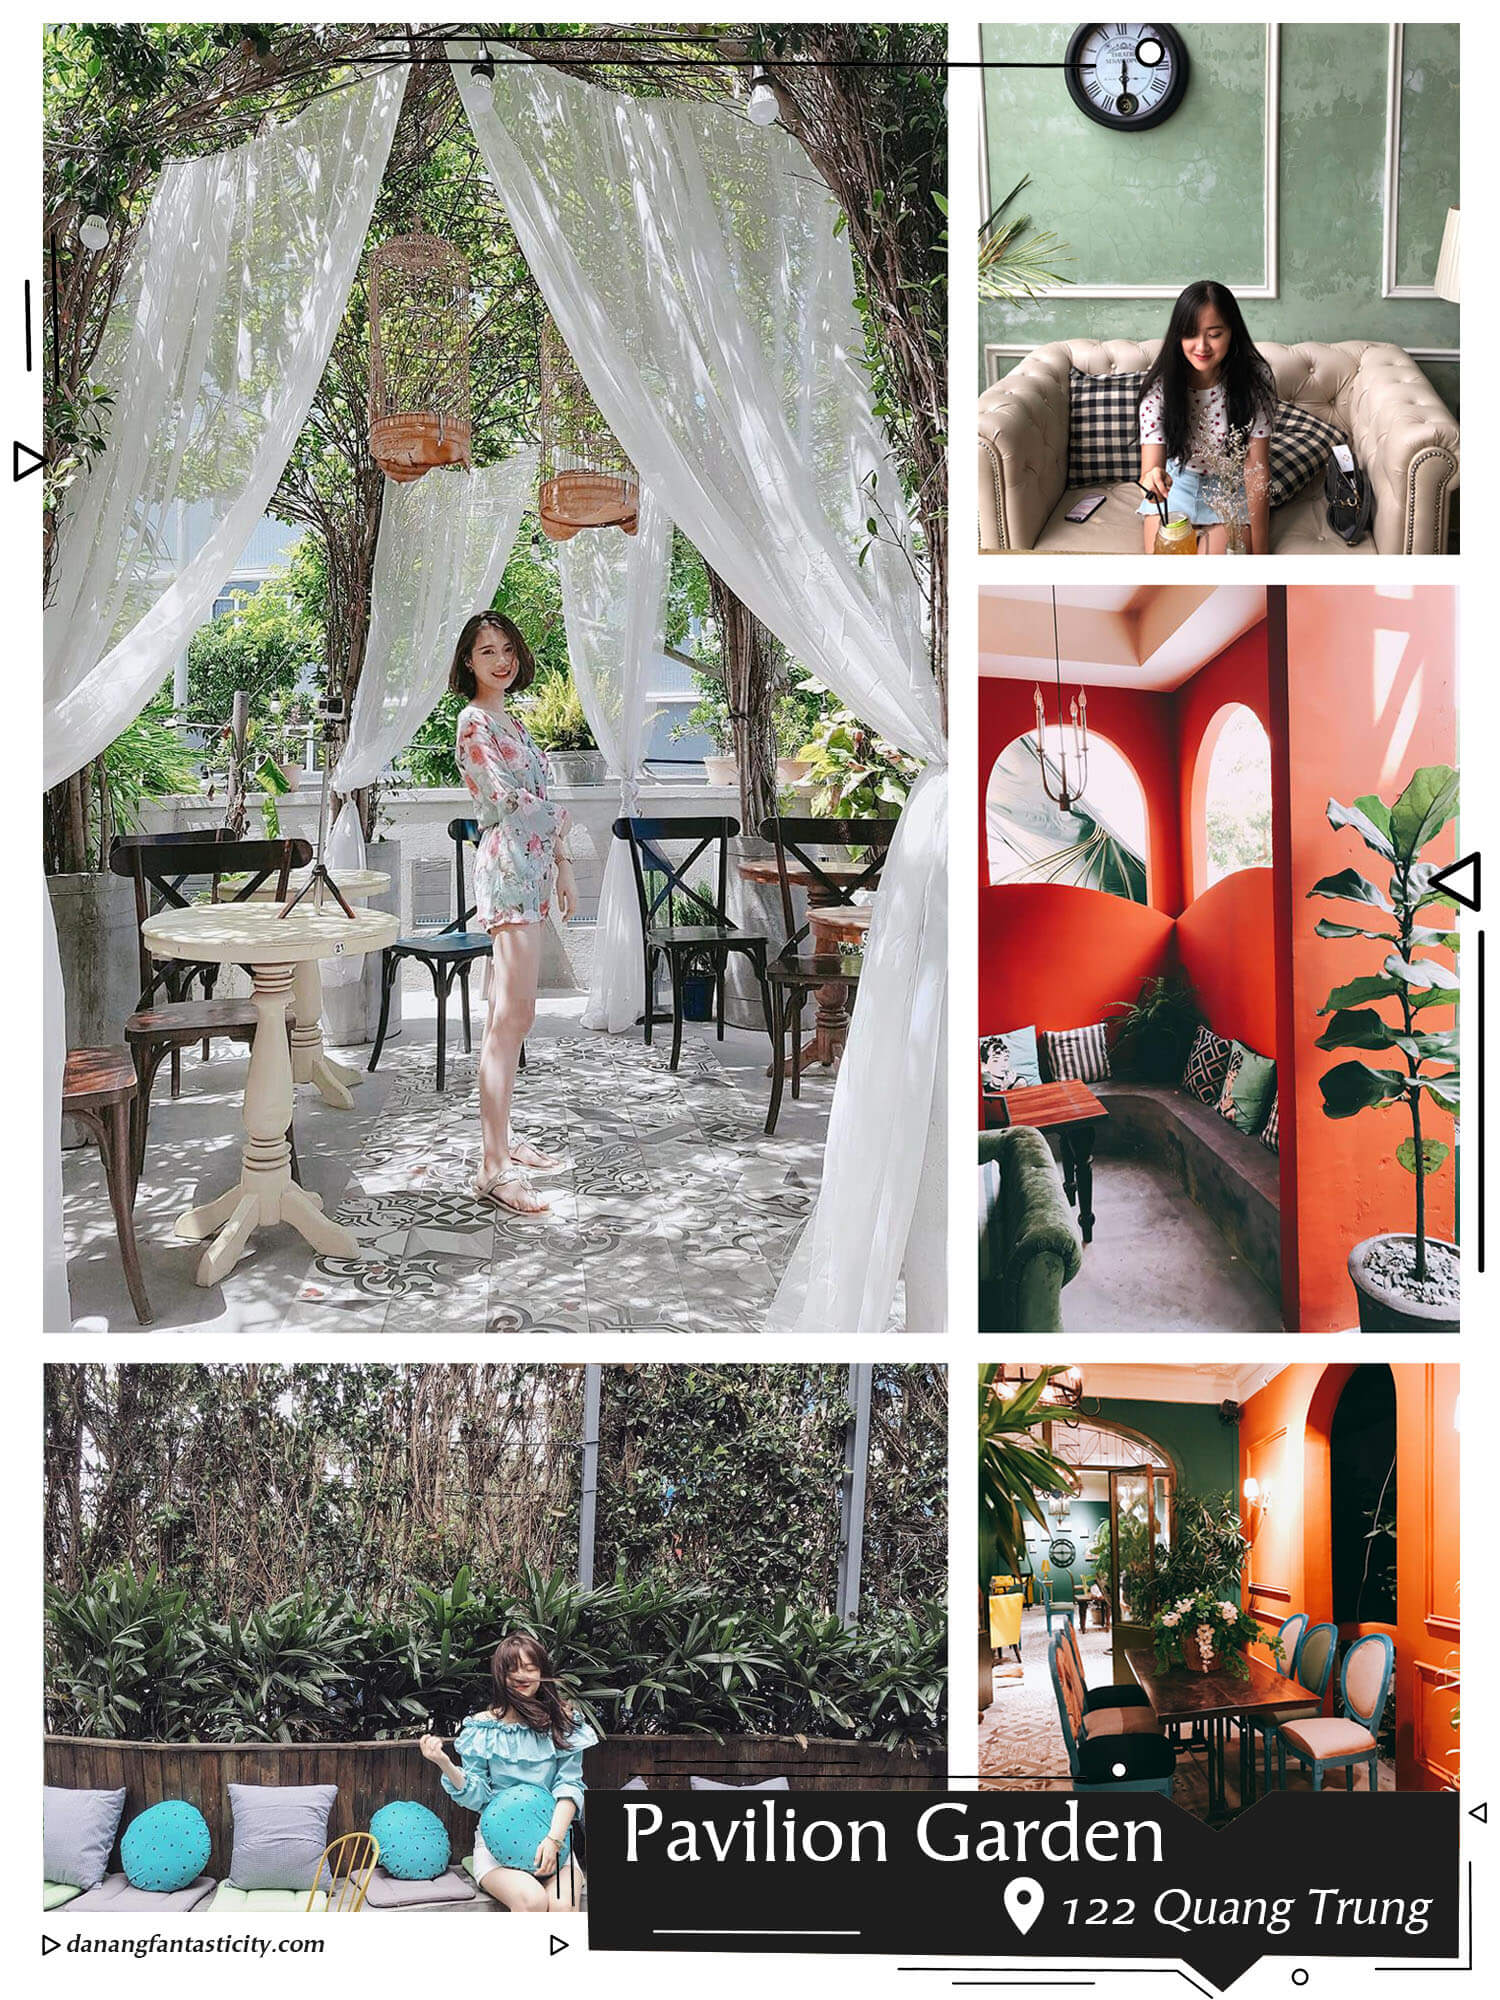 Pavilion Garden 122 Quang Trung Nhung Tiem Cafe Nhat Dinh Phai Ghe Tai Da Nang Fantasticity Com